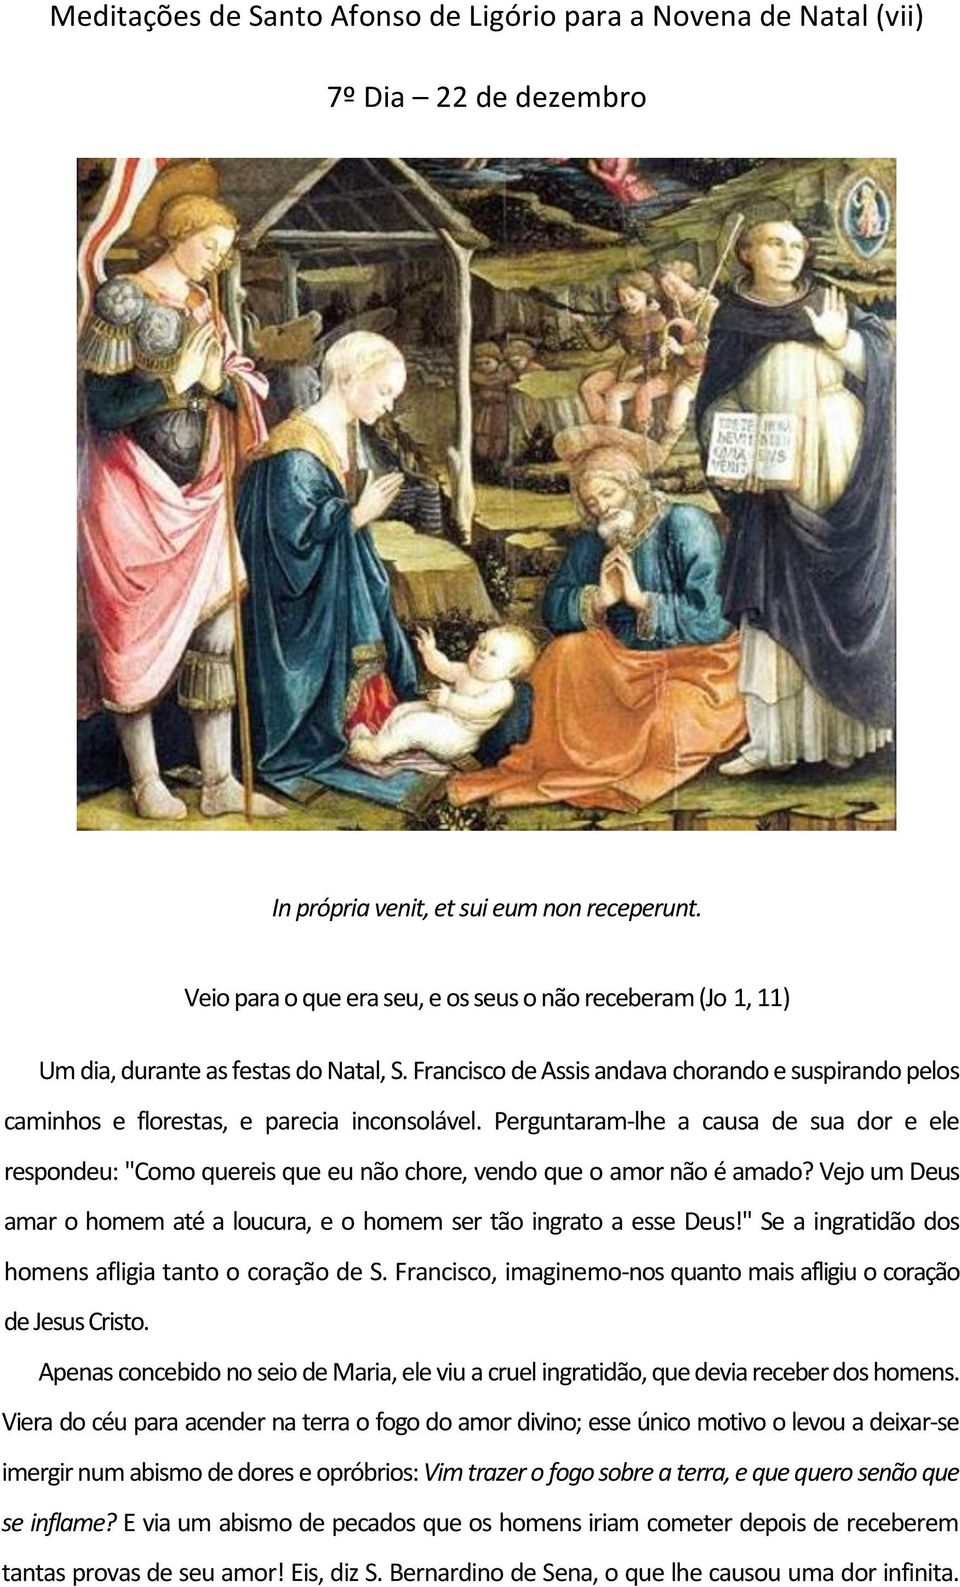 Meditações de Santo Afonso de Ligório a Novena de Natal 1º Dia 16 de  dezembro - PDF Free Download